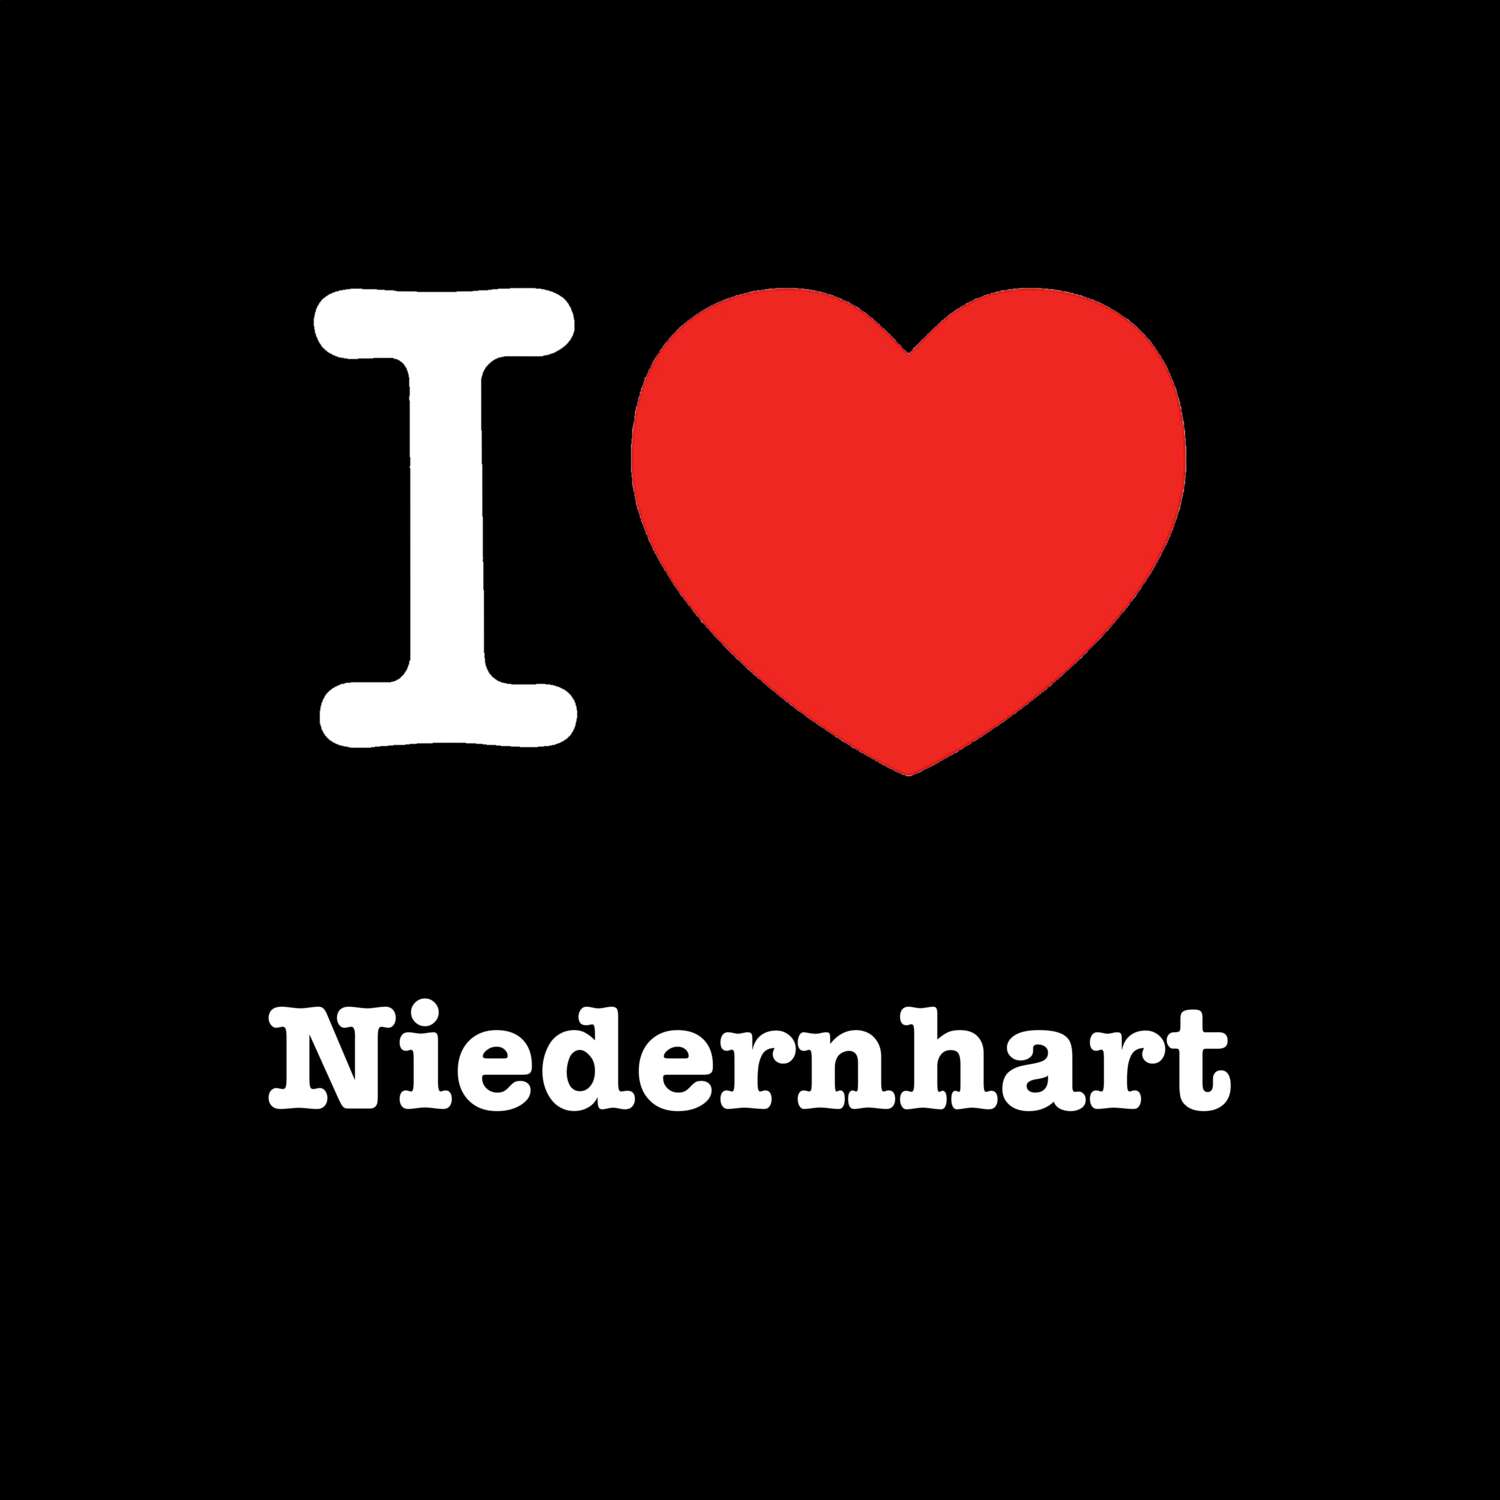 Niedernhart T-Shirt »I love«